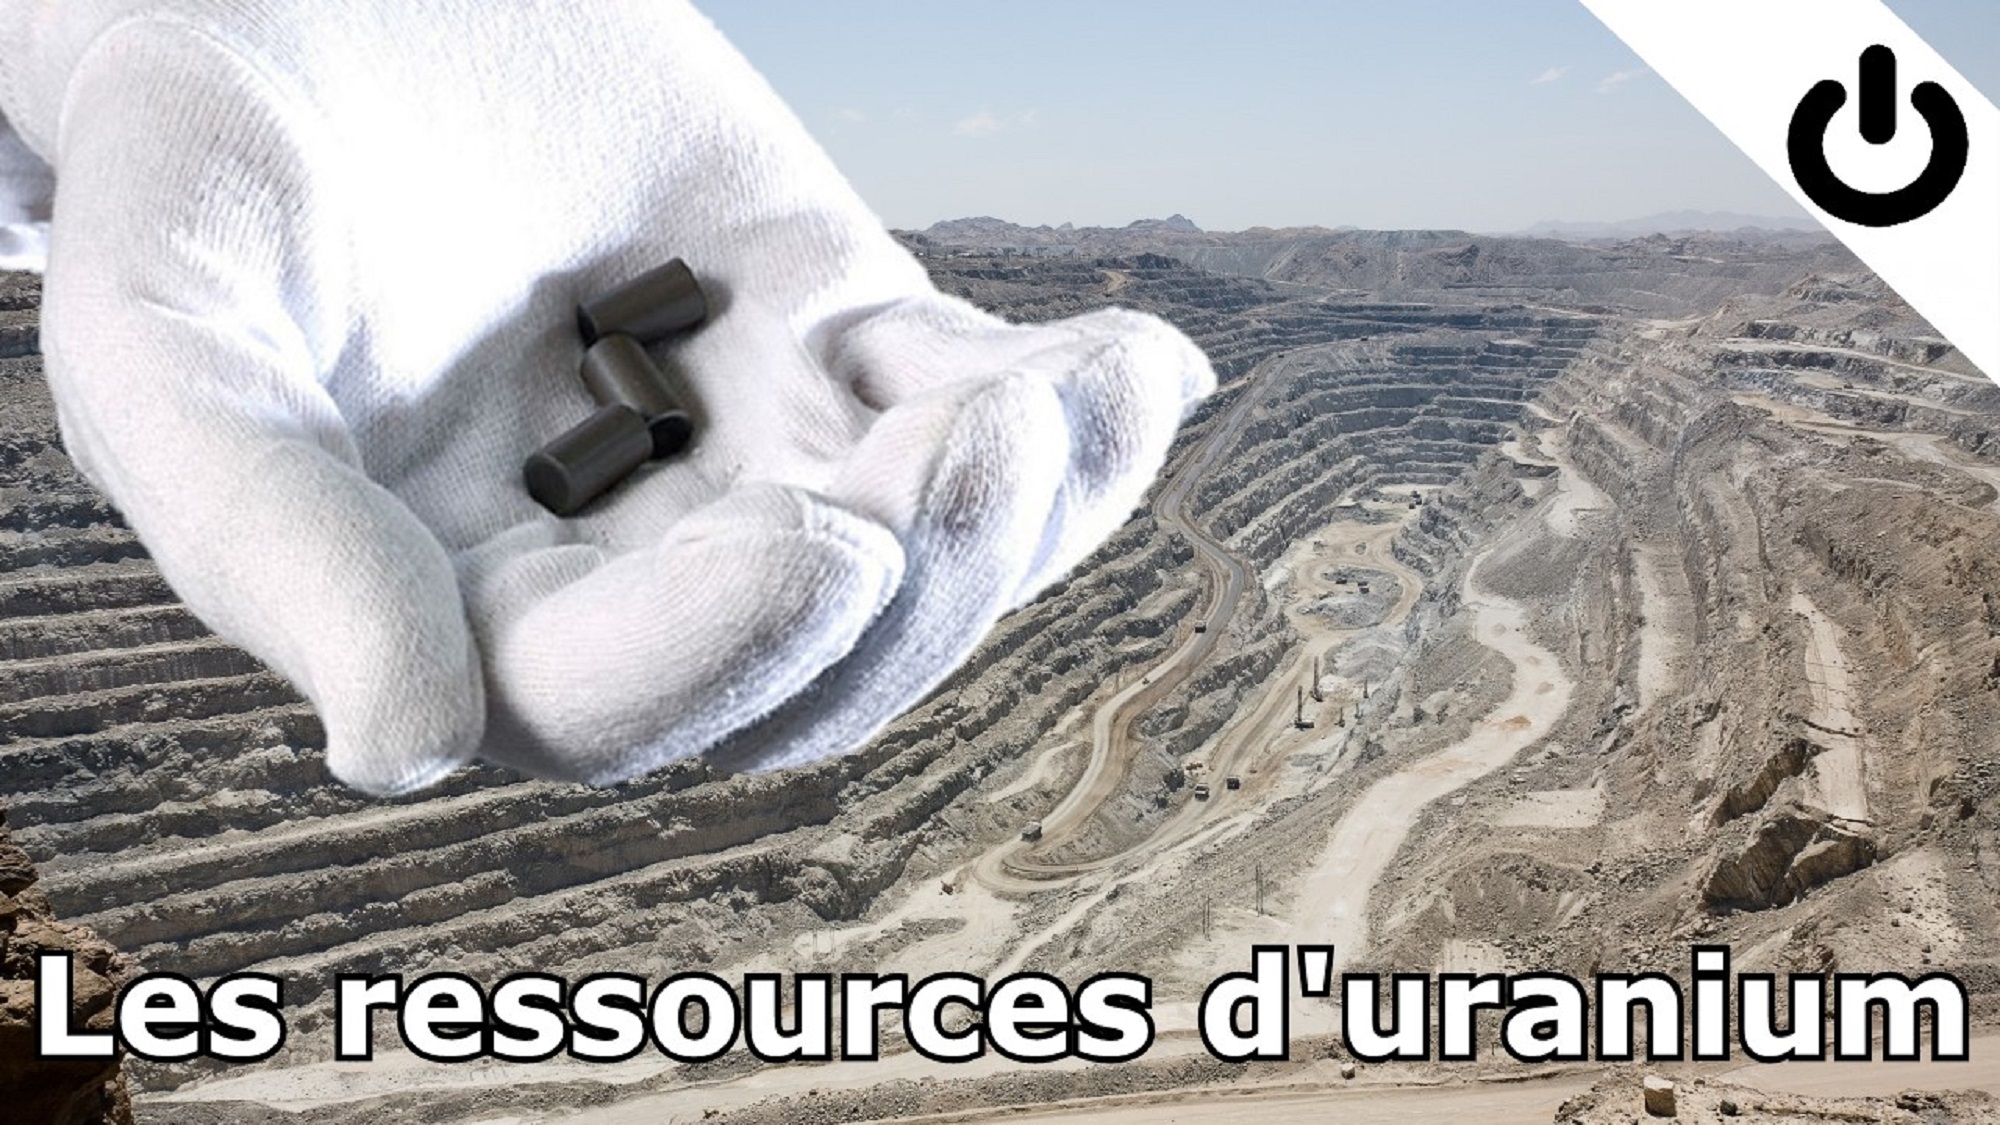 Ressources d'uranium